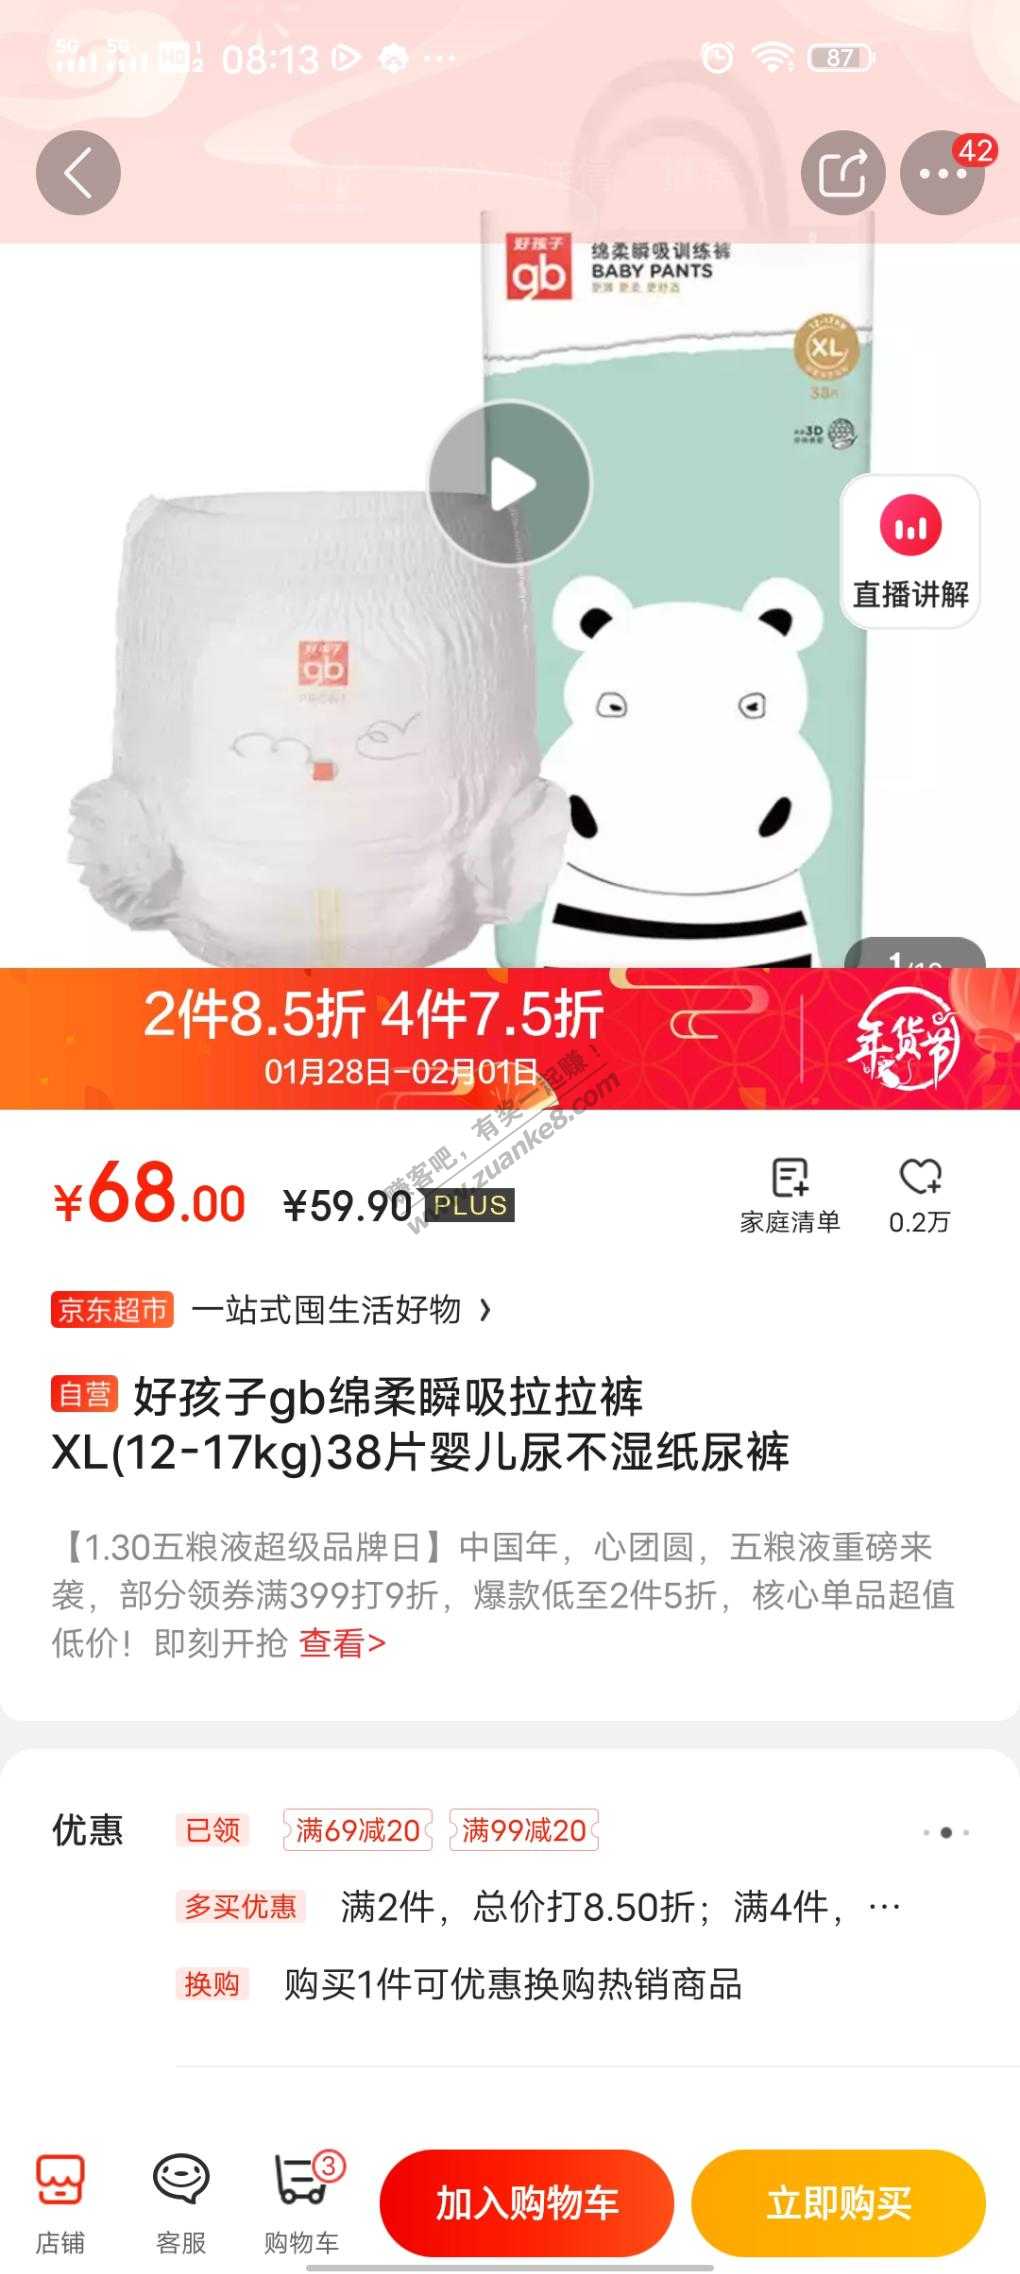 好孩子XL拉拉裤38片买5件每件39块多-价格还可以-这个牌子没用过-惠小助(52huixz.com)